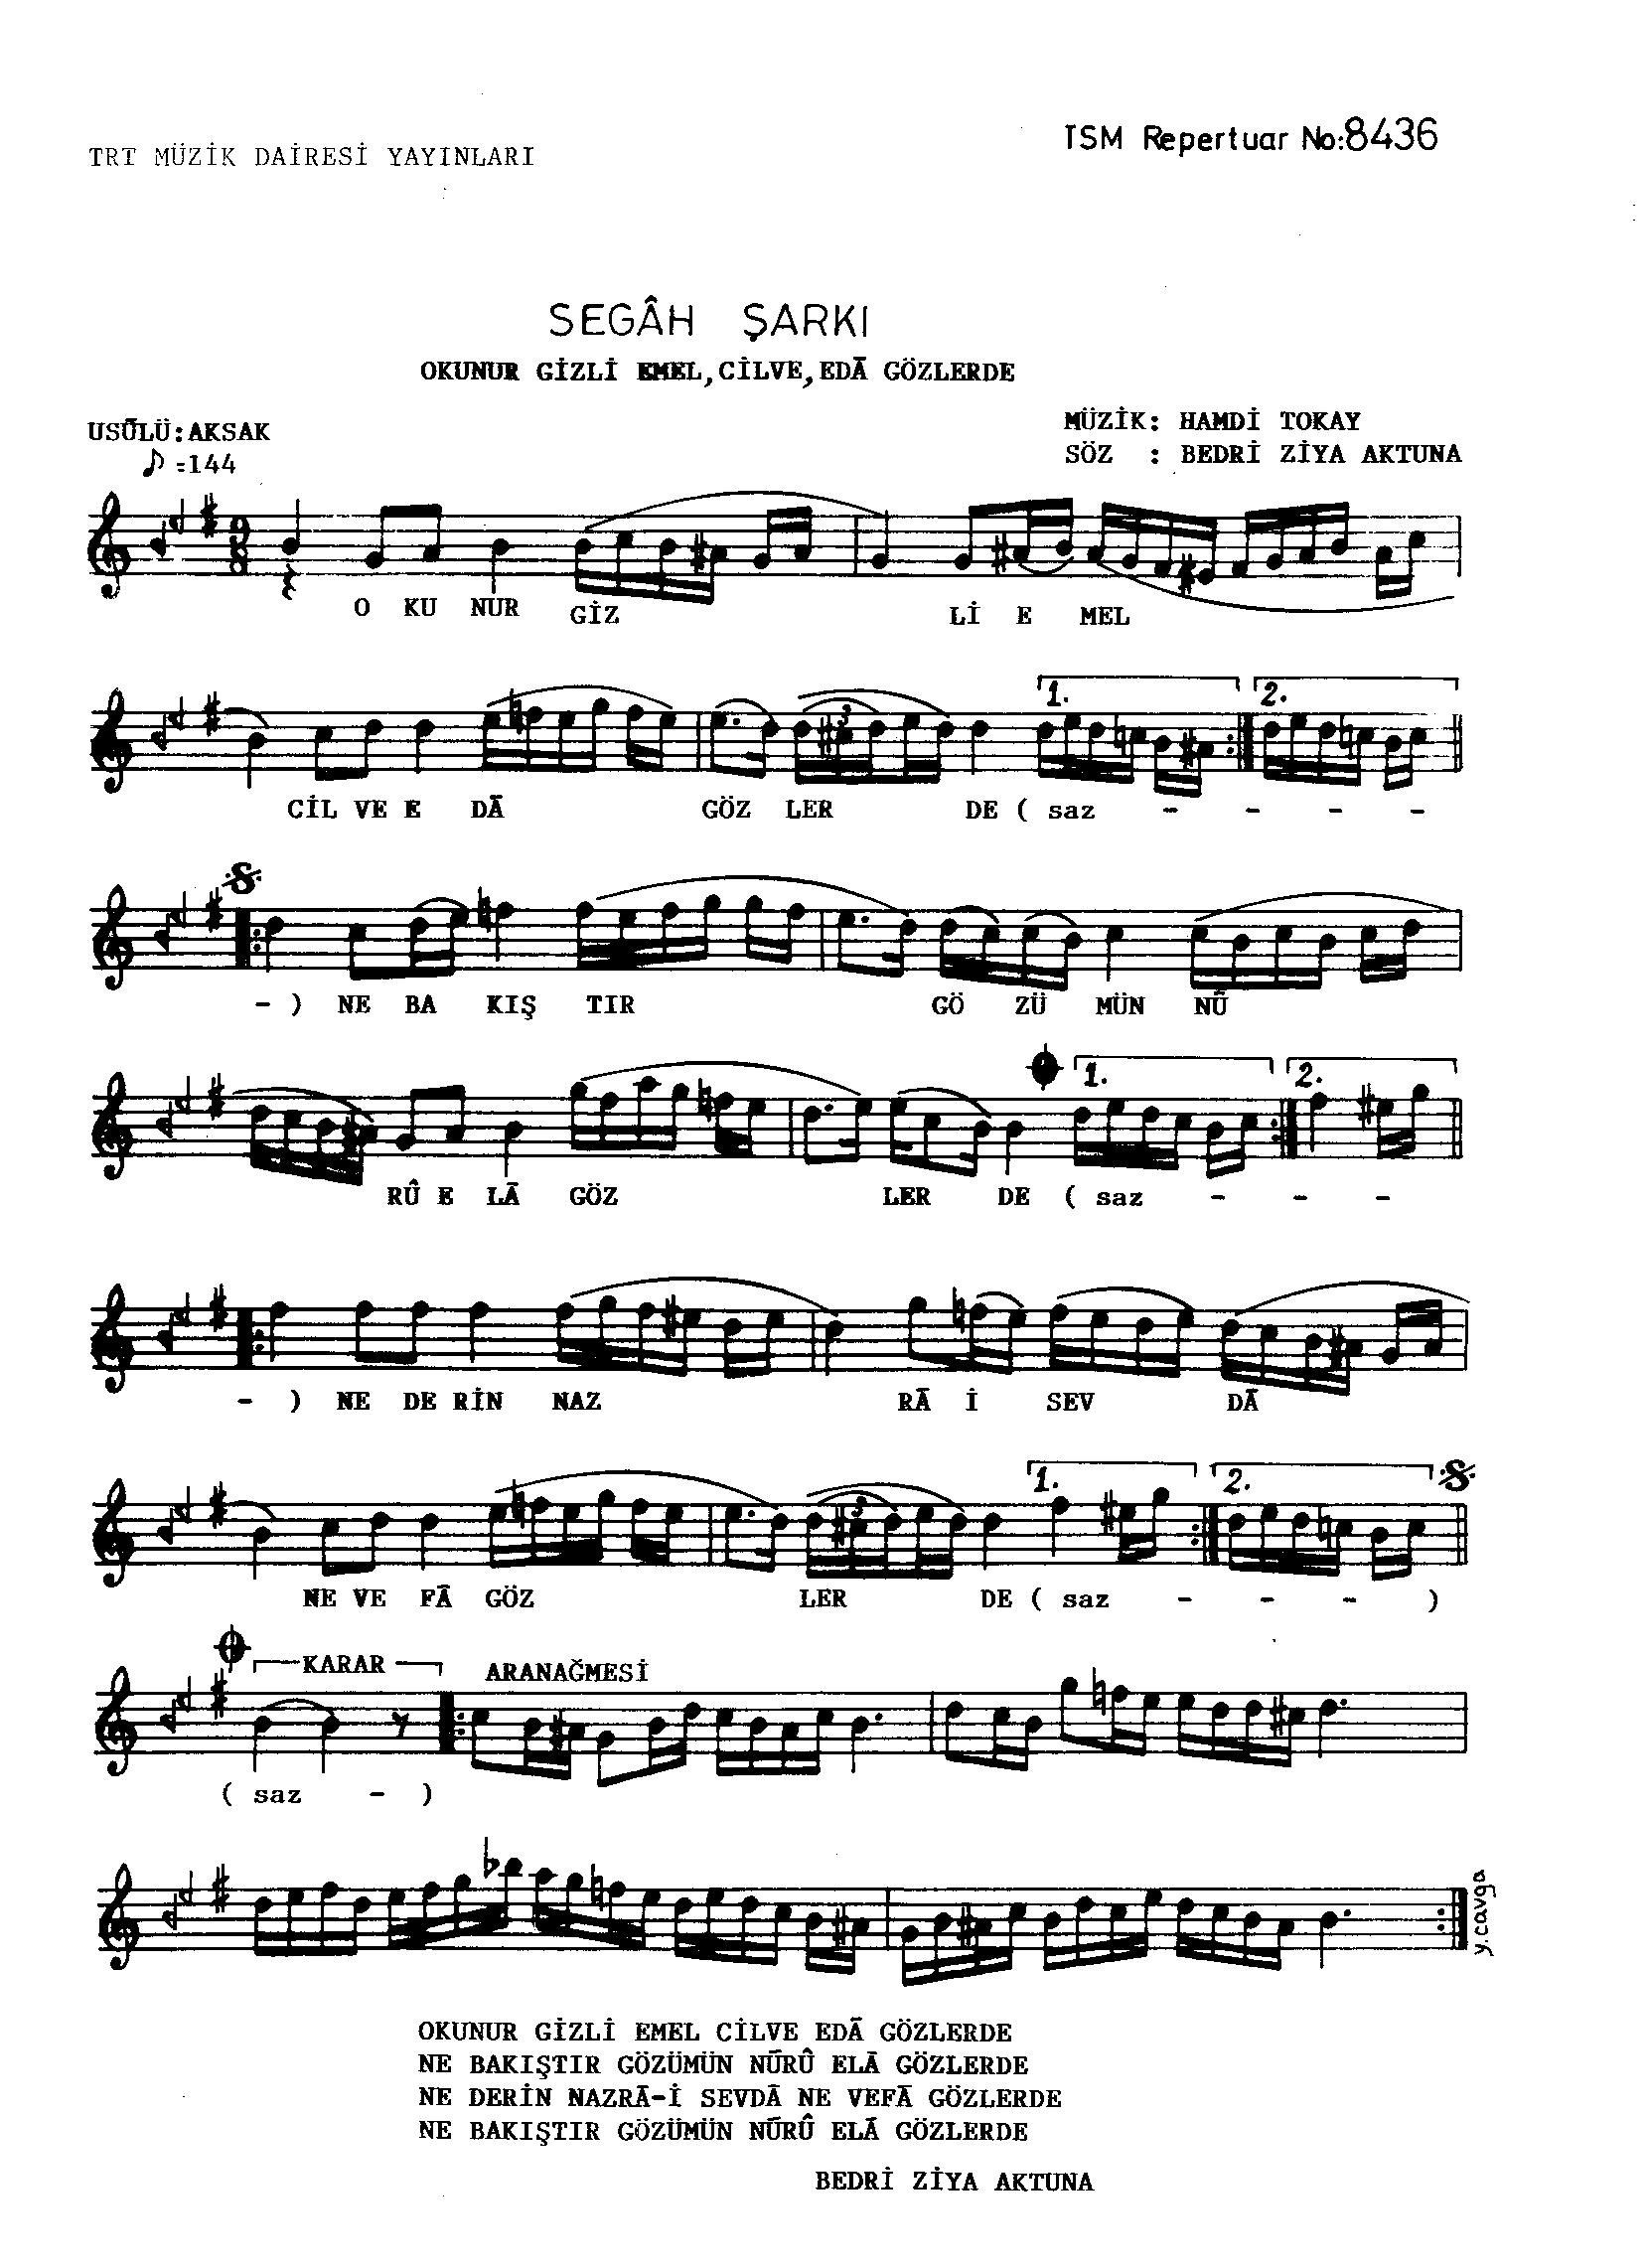 Segâh - Şarkı - Hamdi Tokay - Sayfa 1